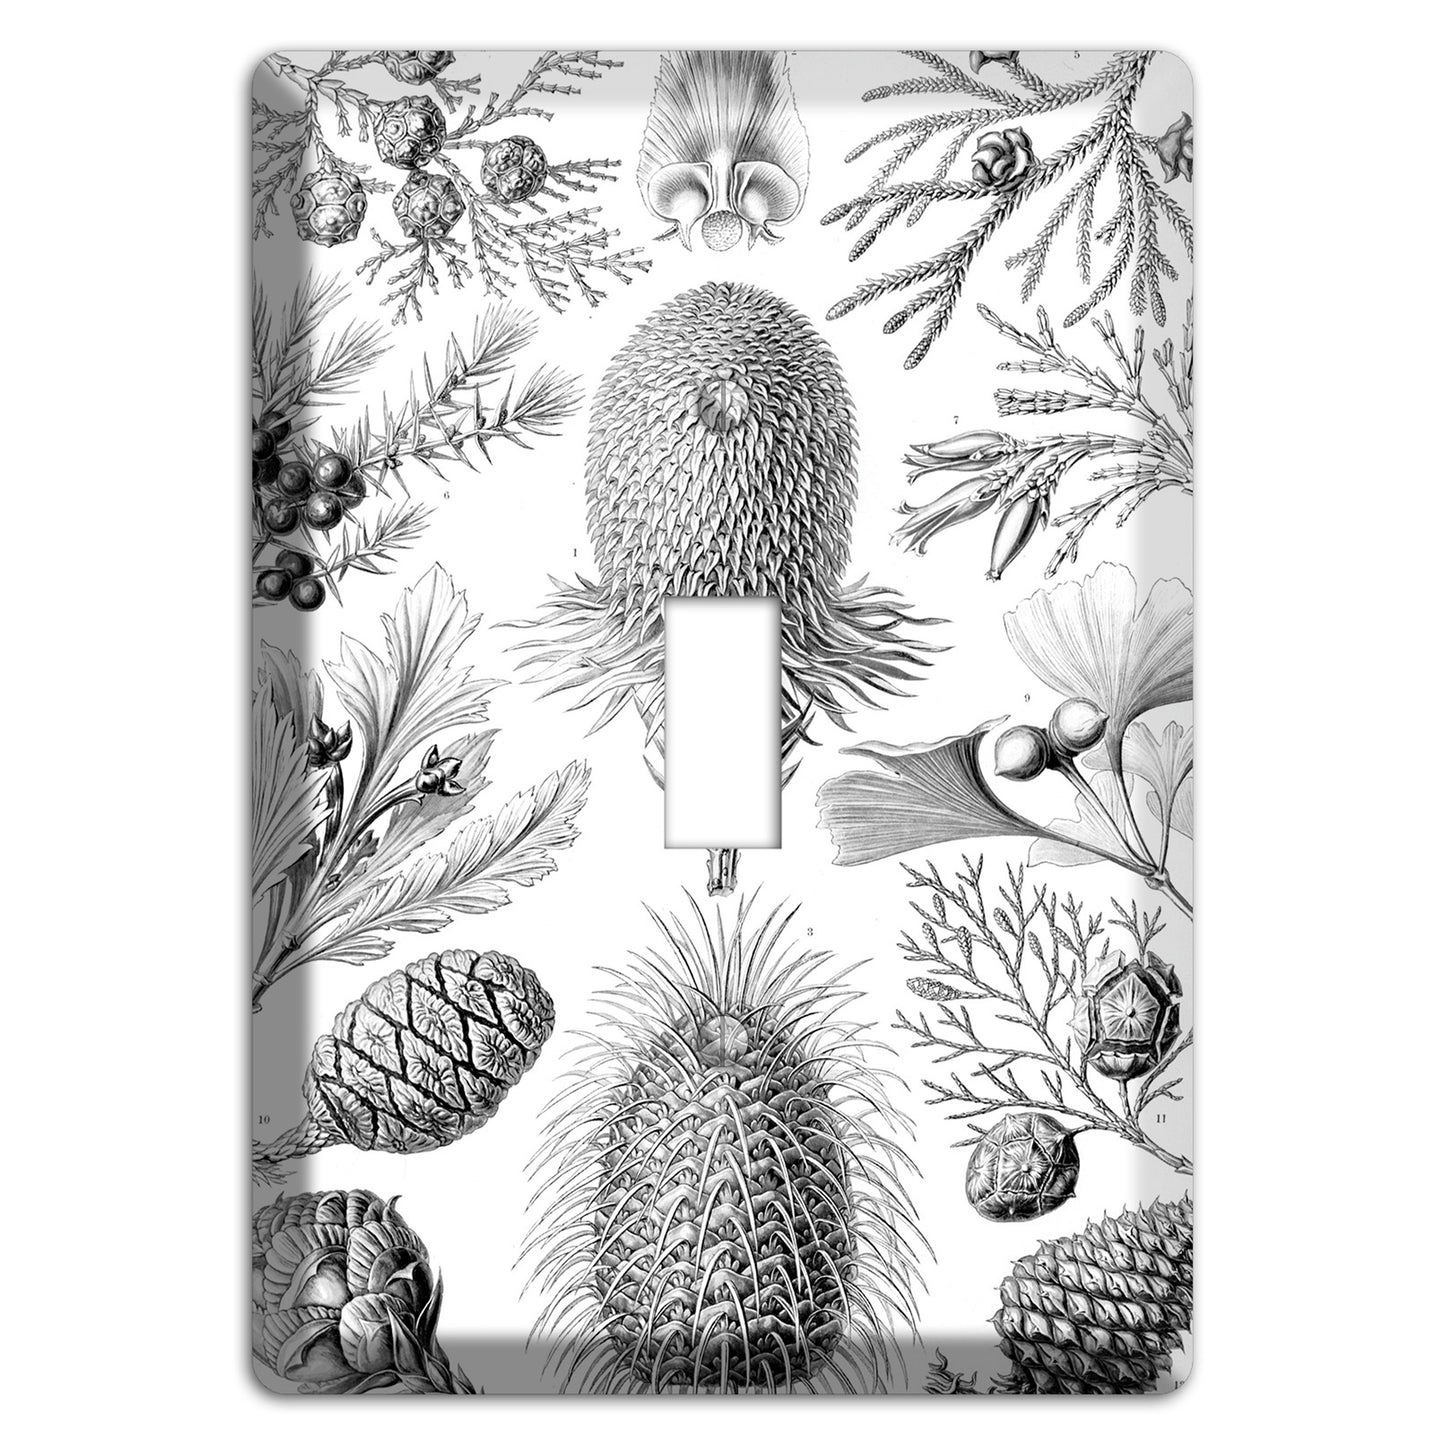 Haeckel - Coniferae Cover Plates